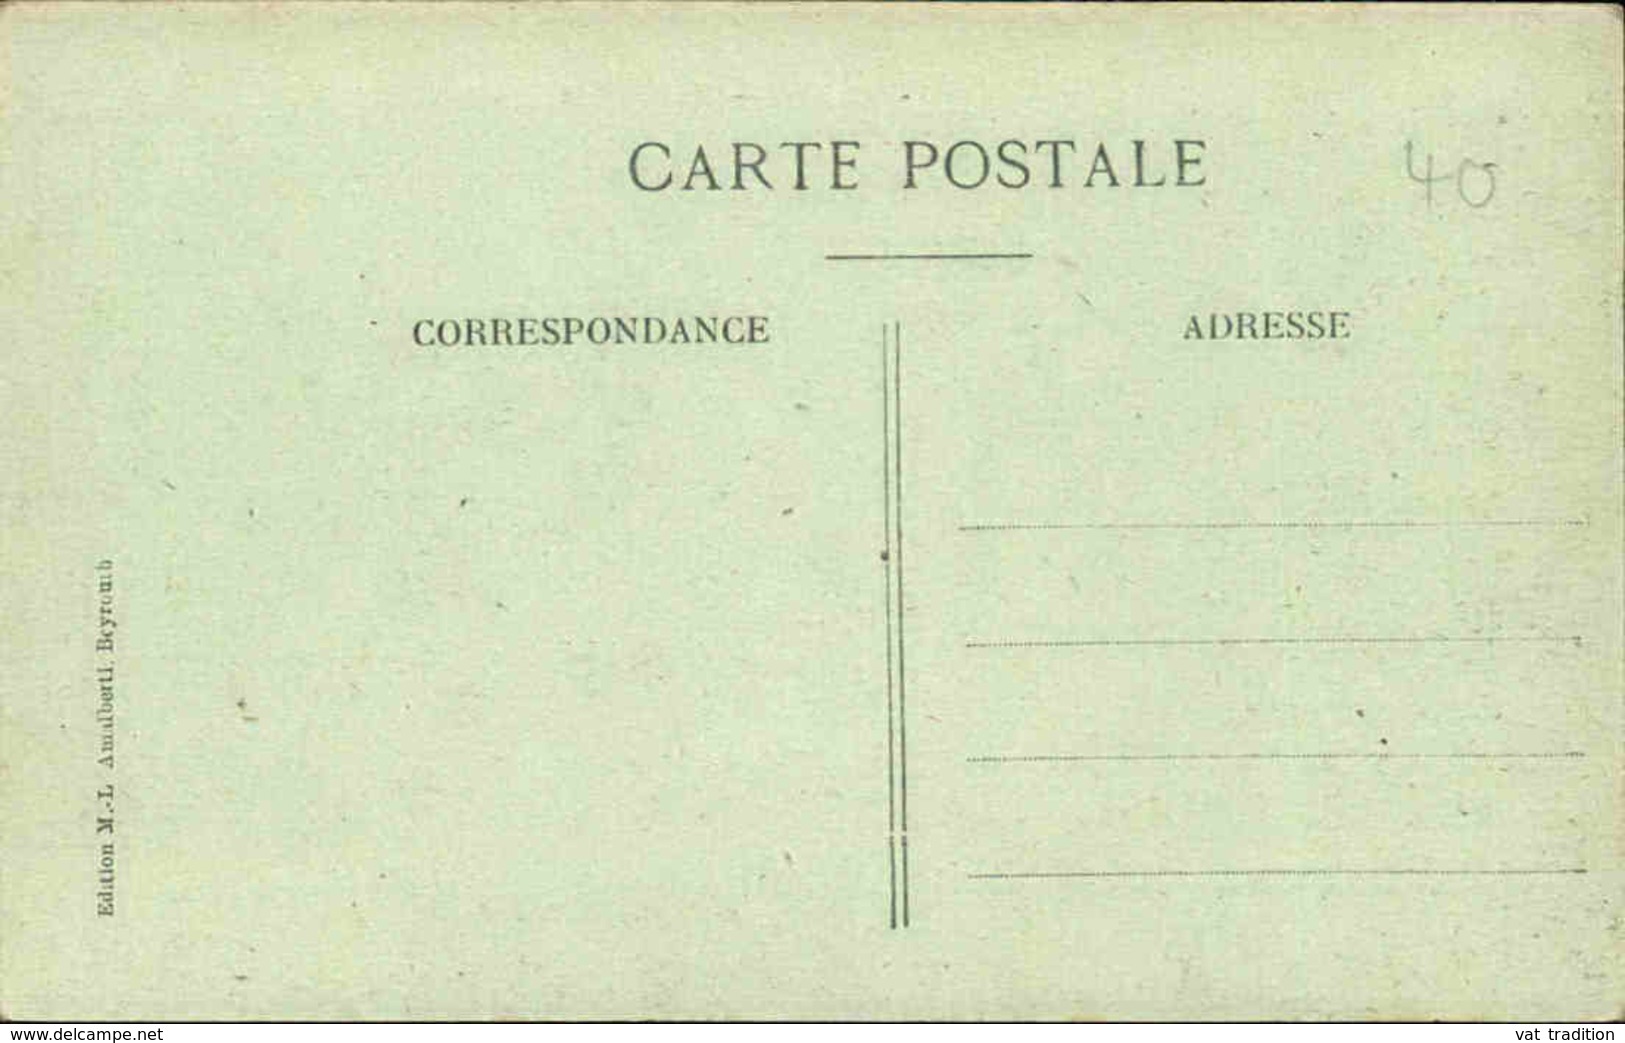 LIBAN - Carte Postale - Aley - Vue Générale - Train - L 66367 - Liban